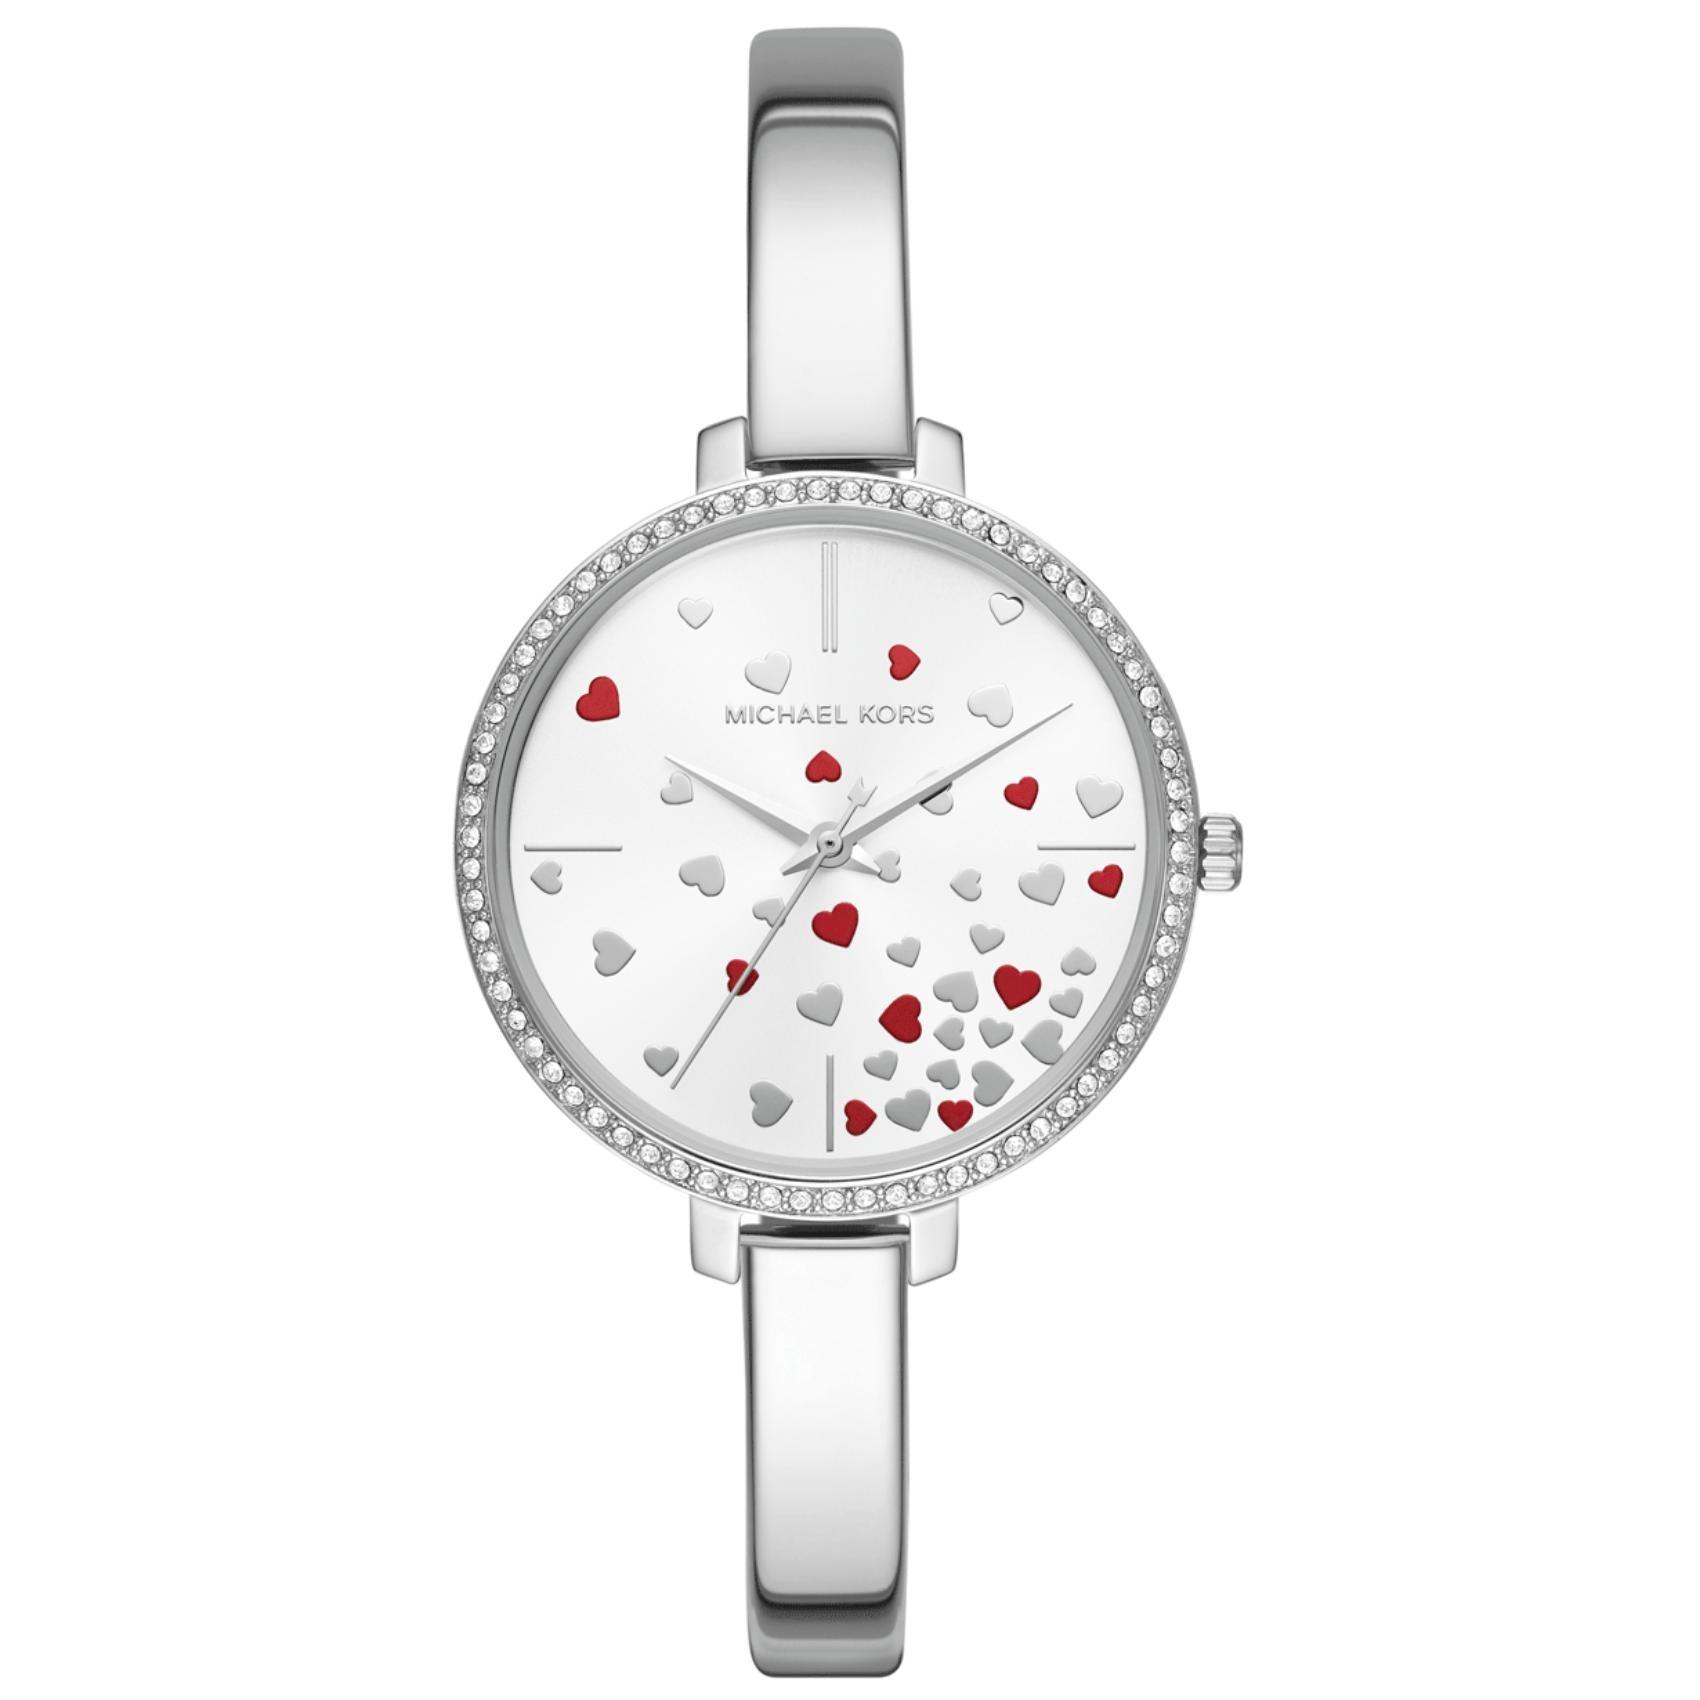 Γυναικείο ρολόι Michael Kors Jaryn MK3976 με λεπτό ασημί μπρασελέ, στρογγυλό ασημί καντράν με κόκκινες καρδιές και στεφάνι 36mm με ζιργκόν.